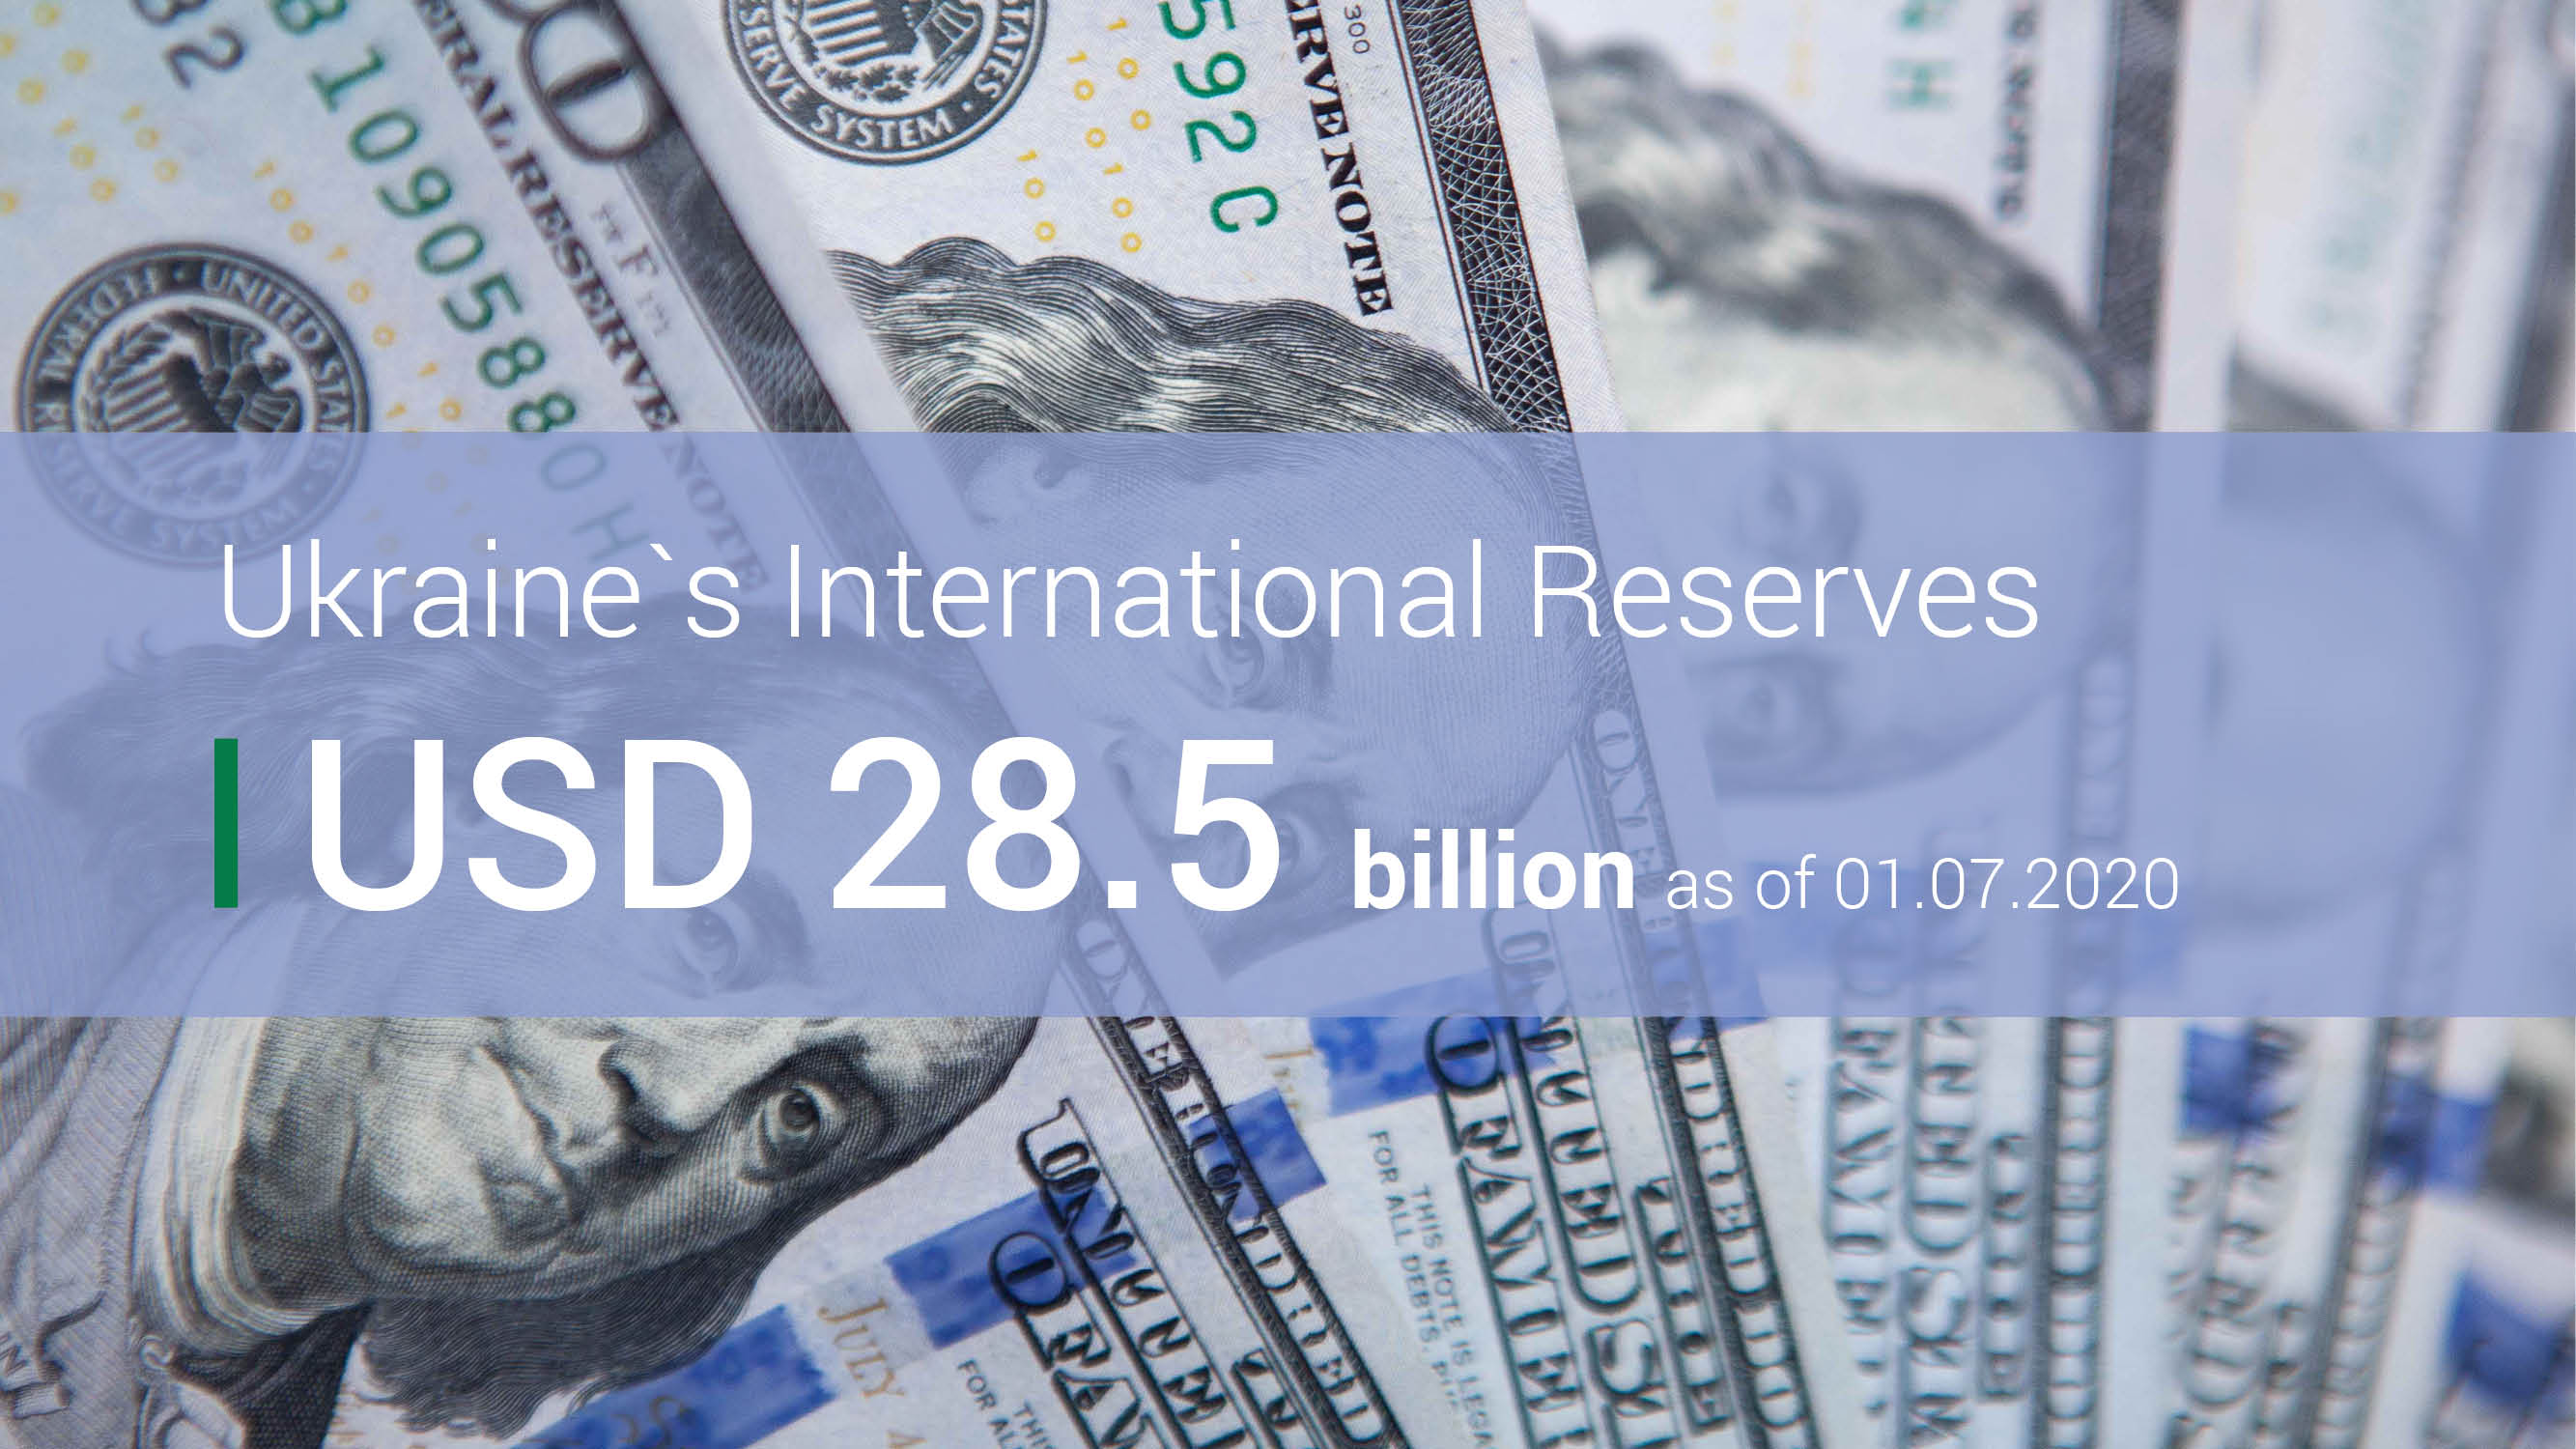 Ukraine’s International Reserves Rose by over USD 3 Billion in June